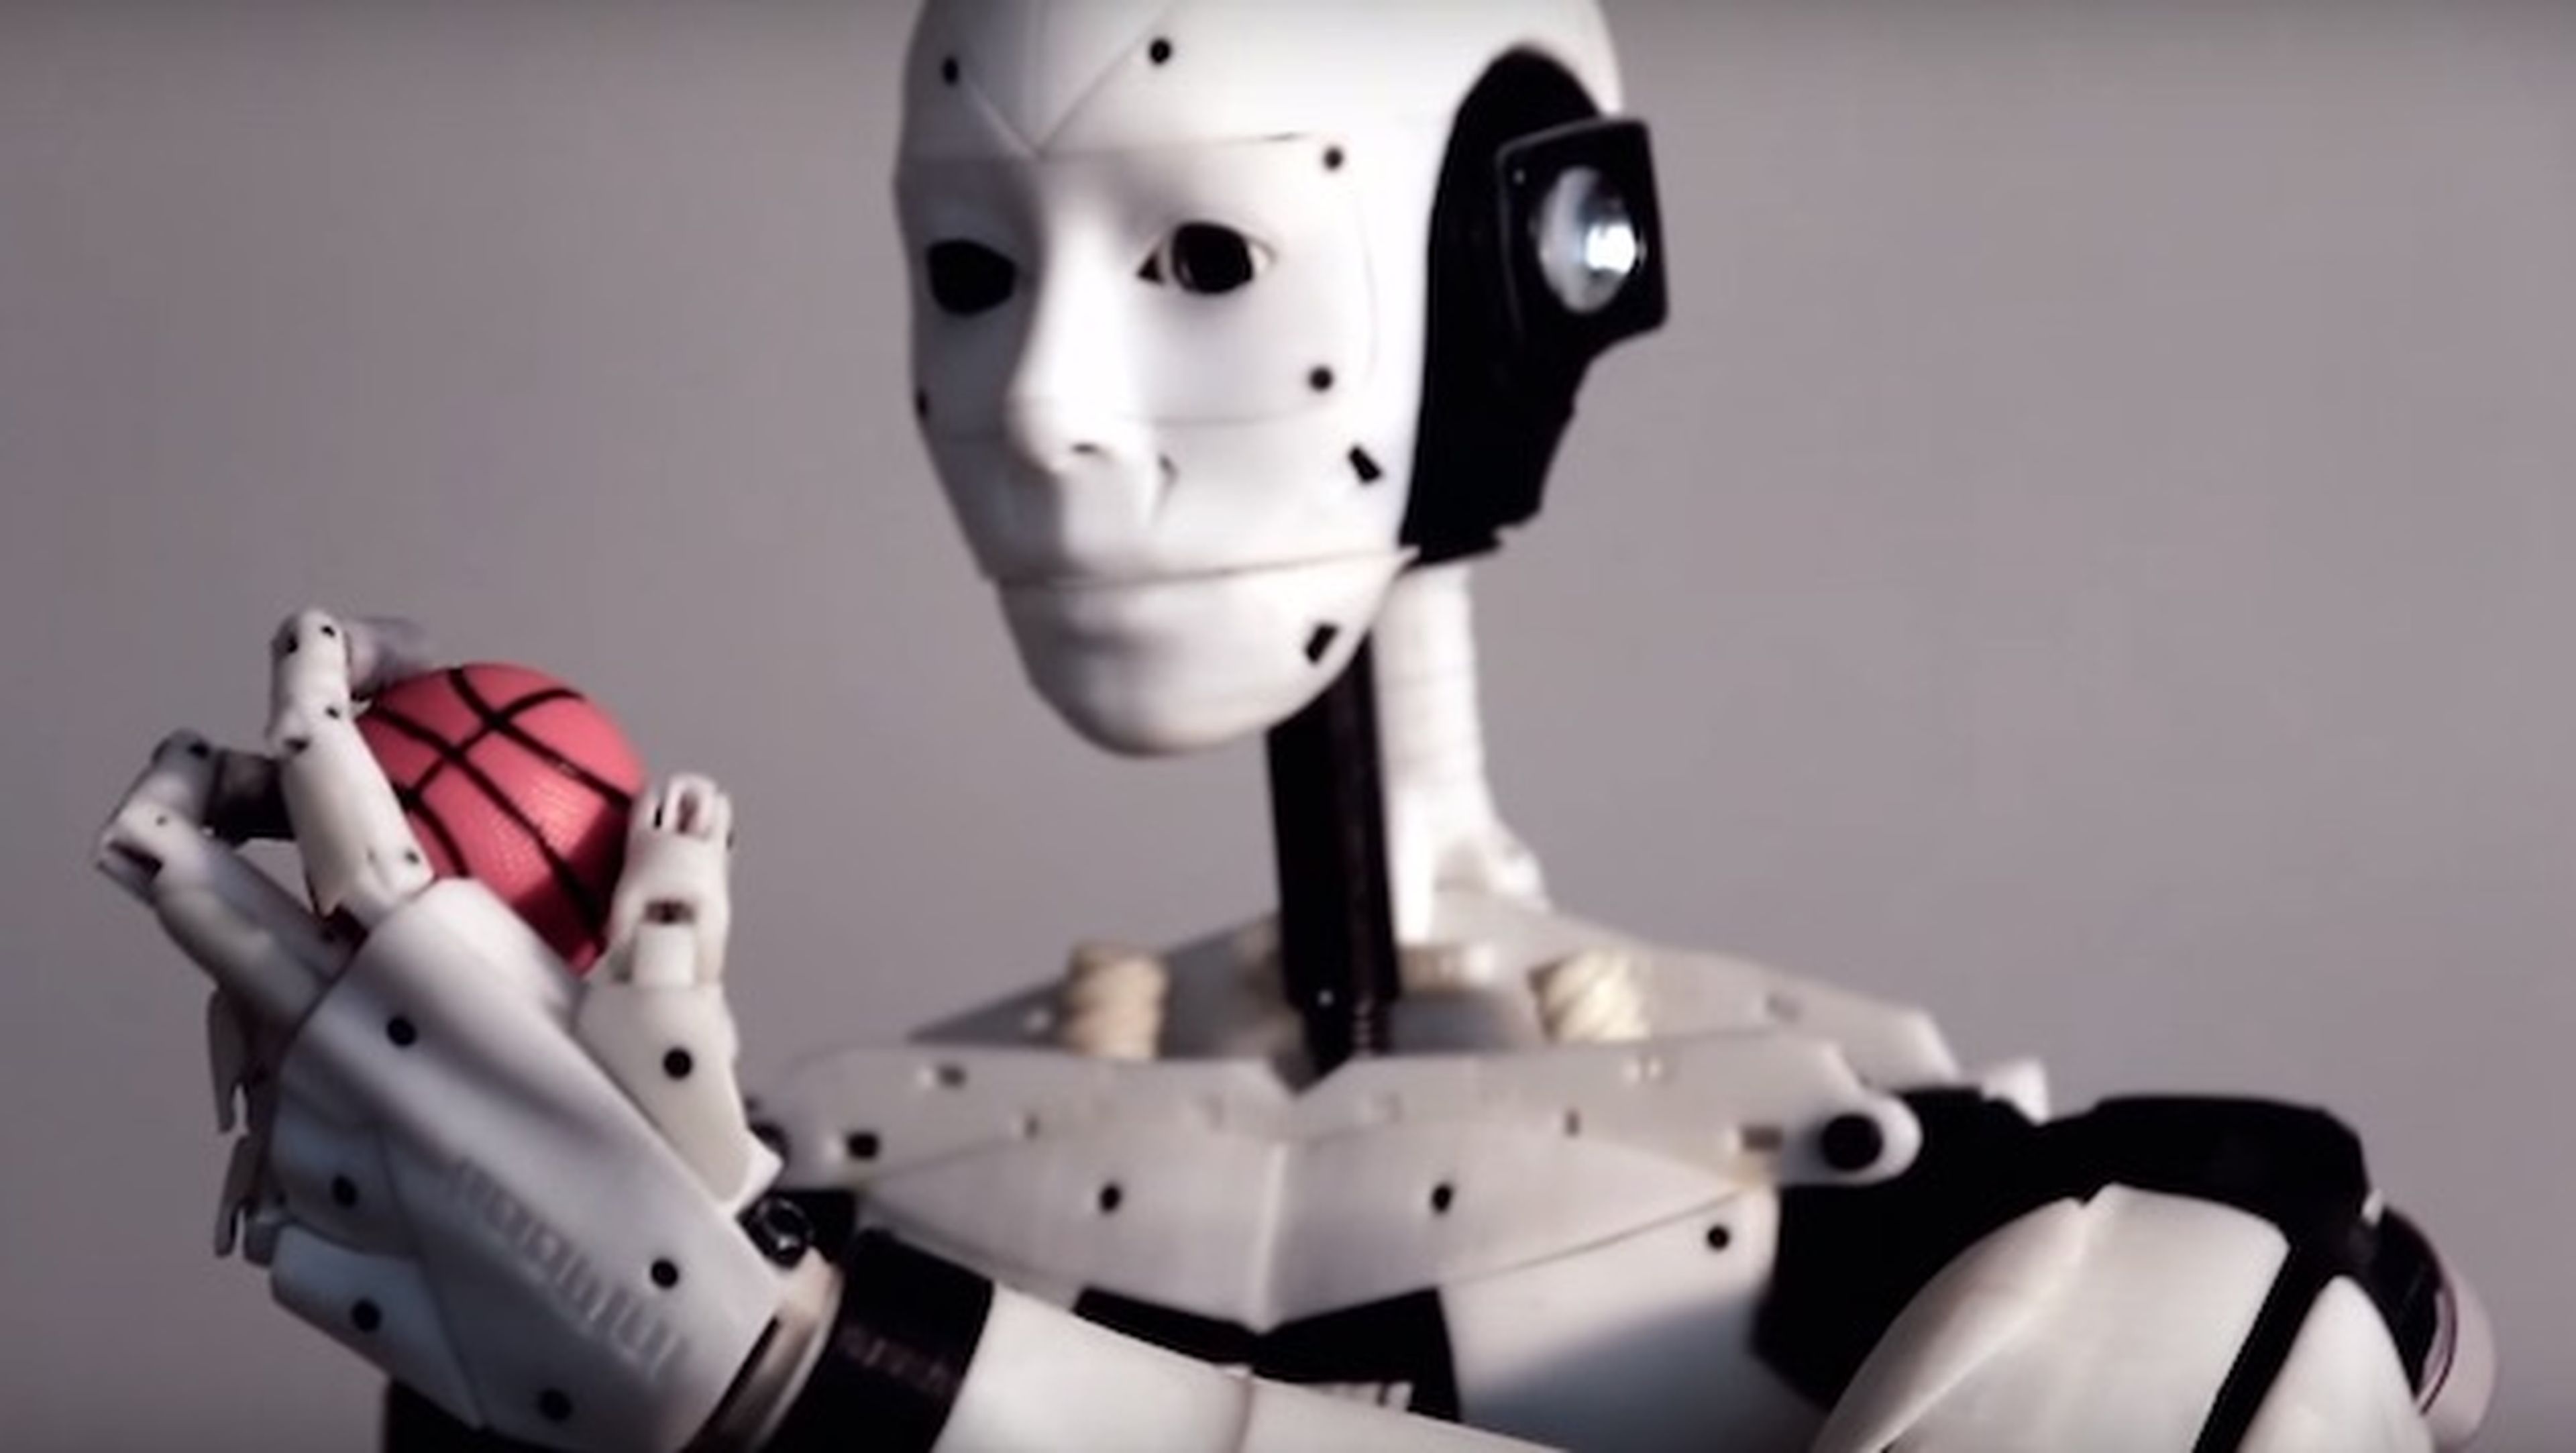 Coincidencia Astronave término análogo Construye un robot humanoide tú mismo por menos de 800 euros | Computer Hoy